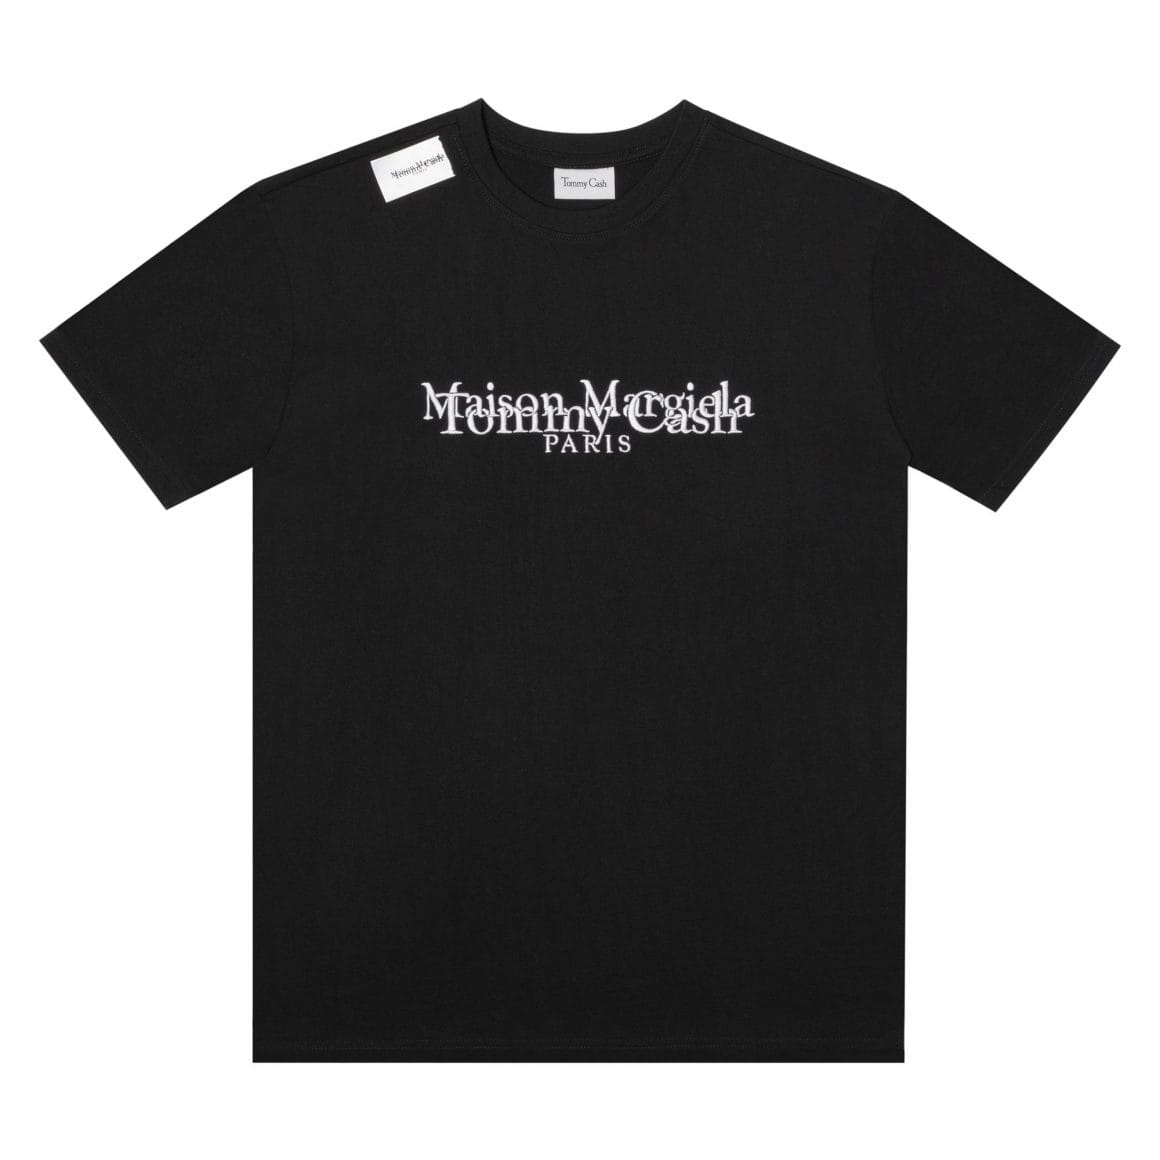 T-shirt manche courte, noir avec logo en blanc.